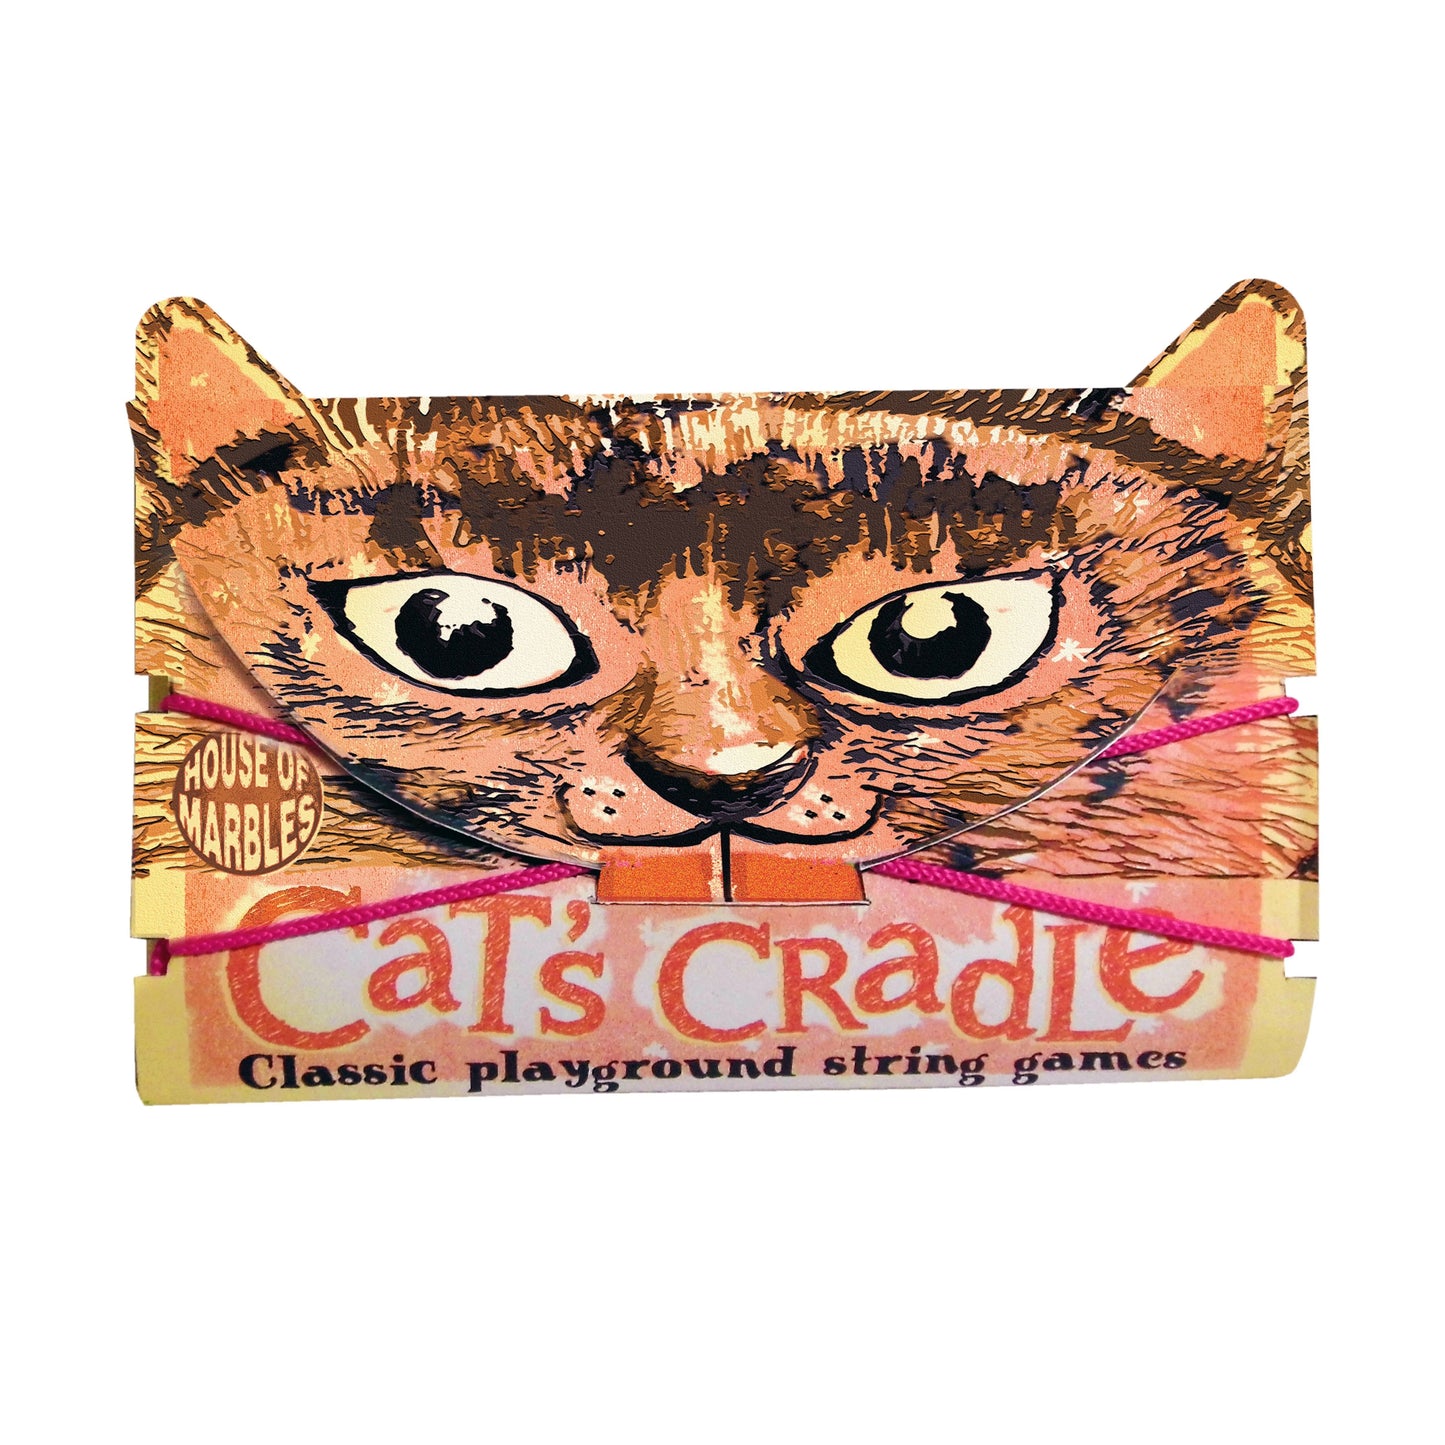 Cat's Cradle